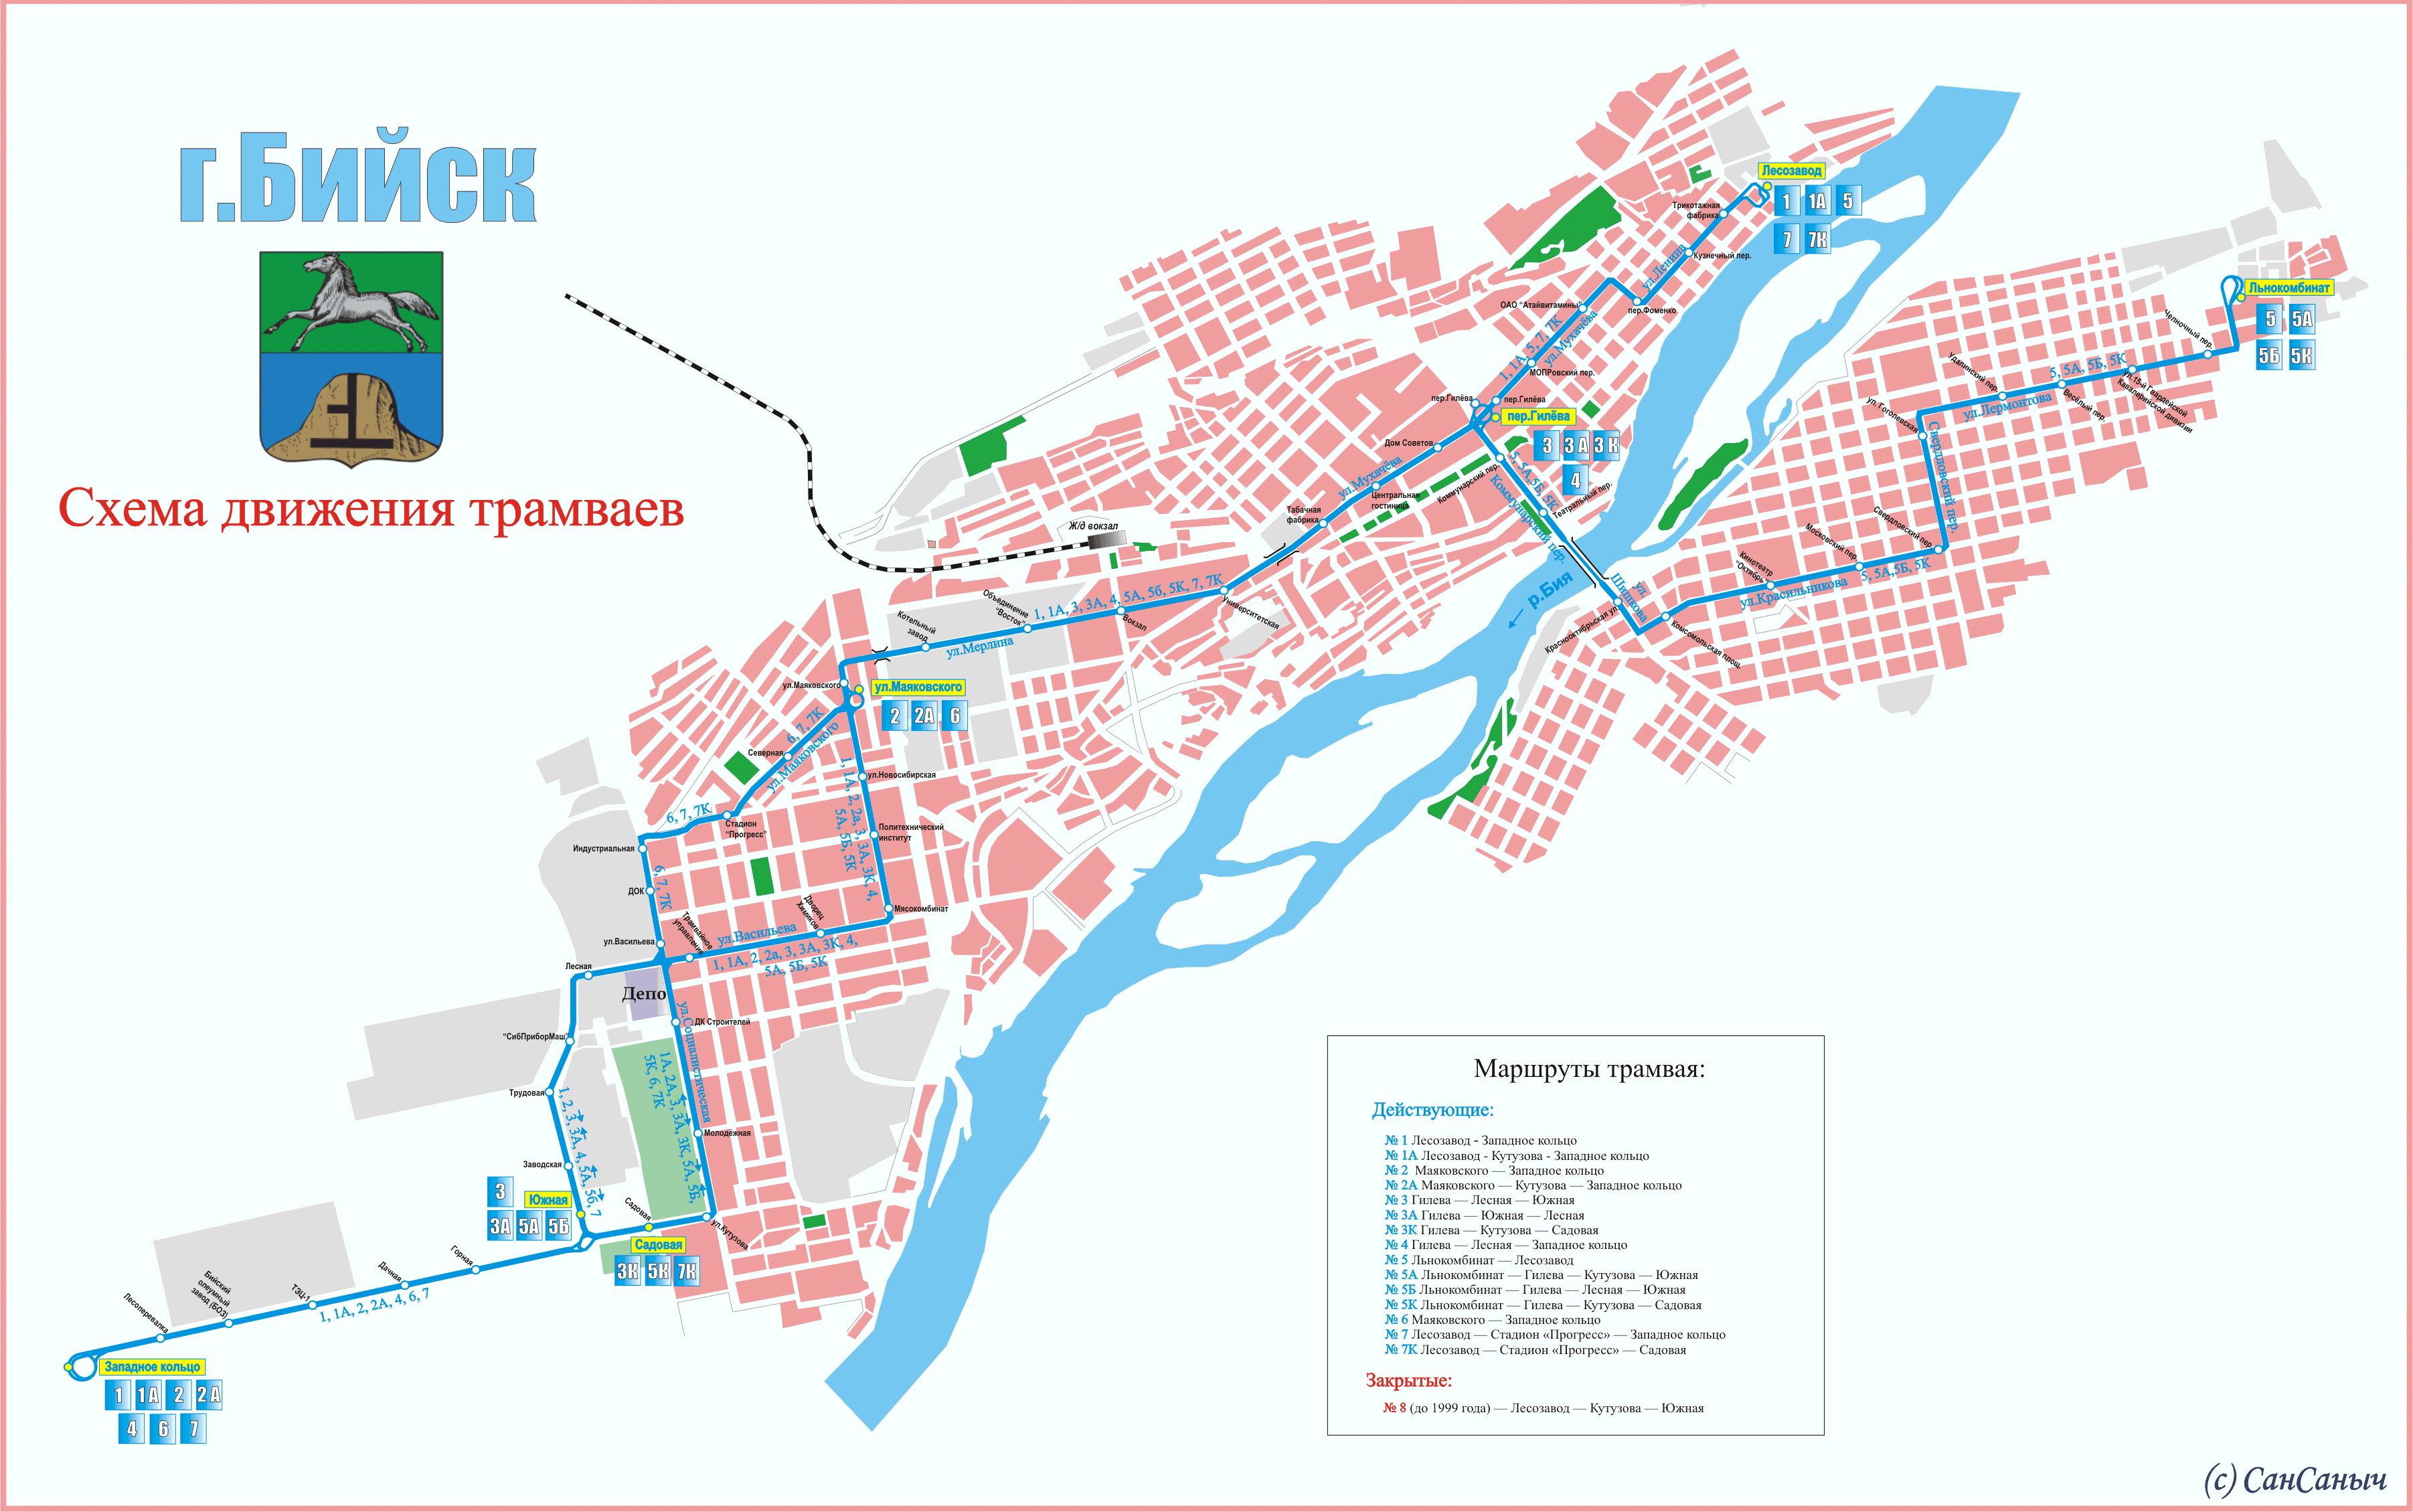 Biysk — Maps